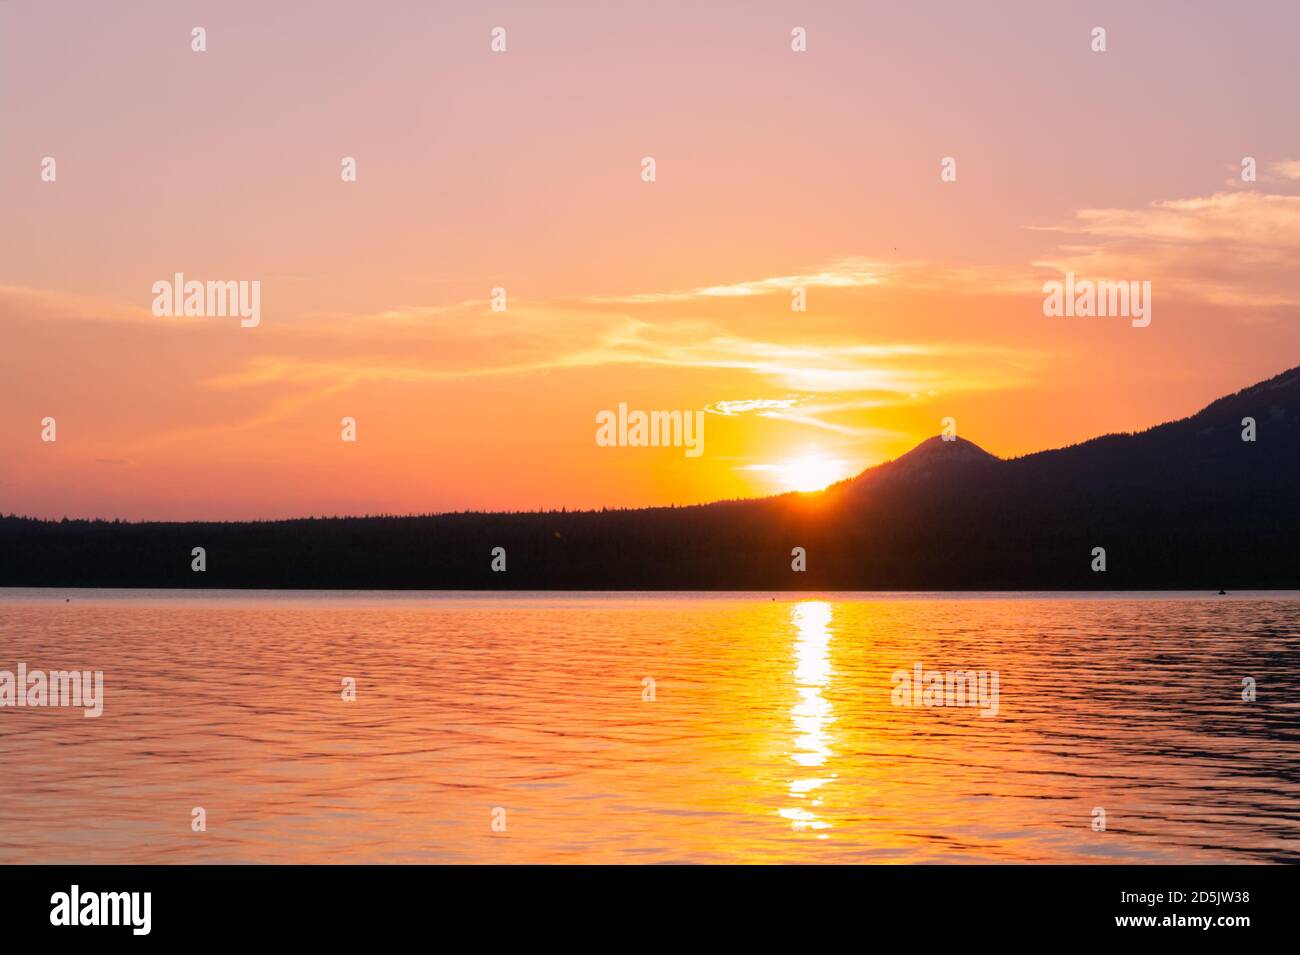 Sunset scene on lake. Summer Stock Photo